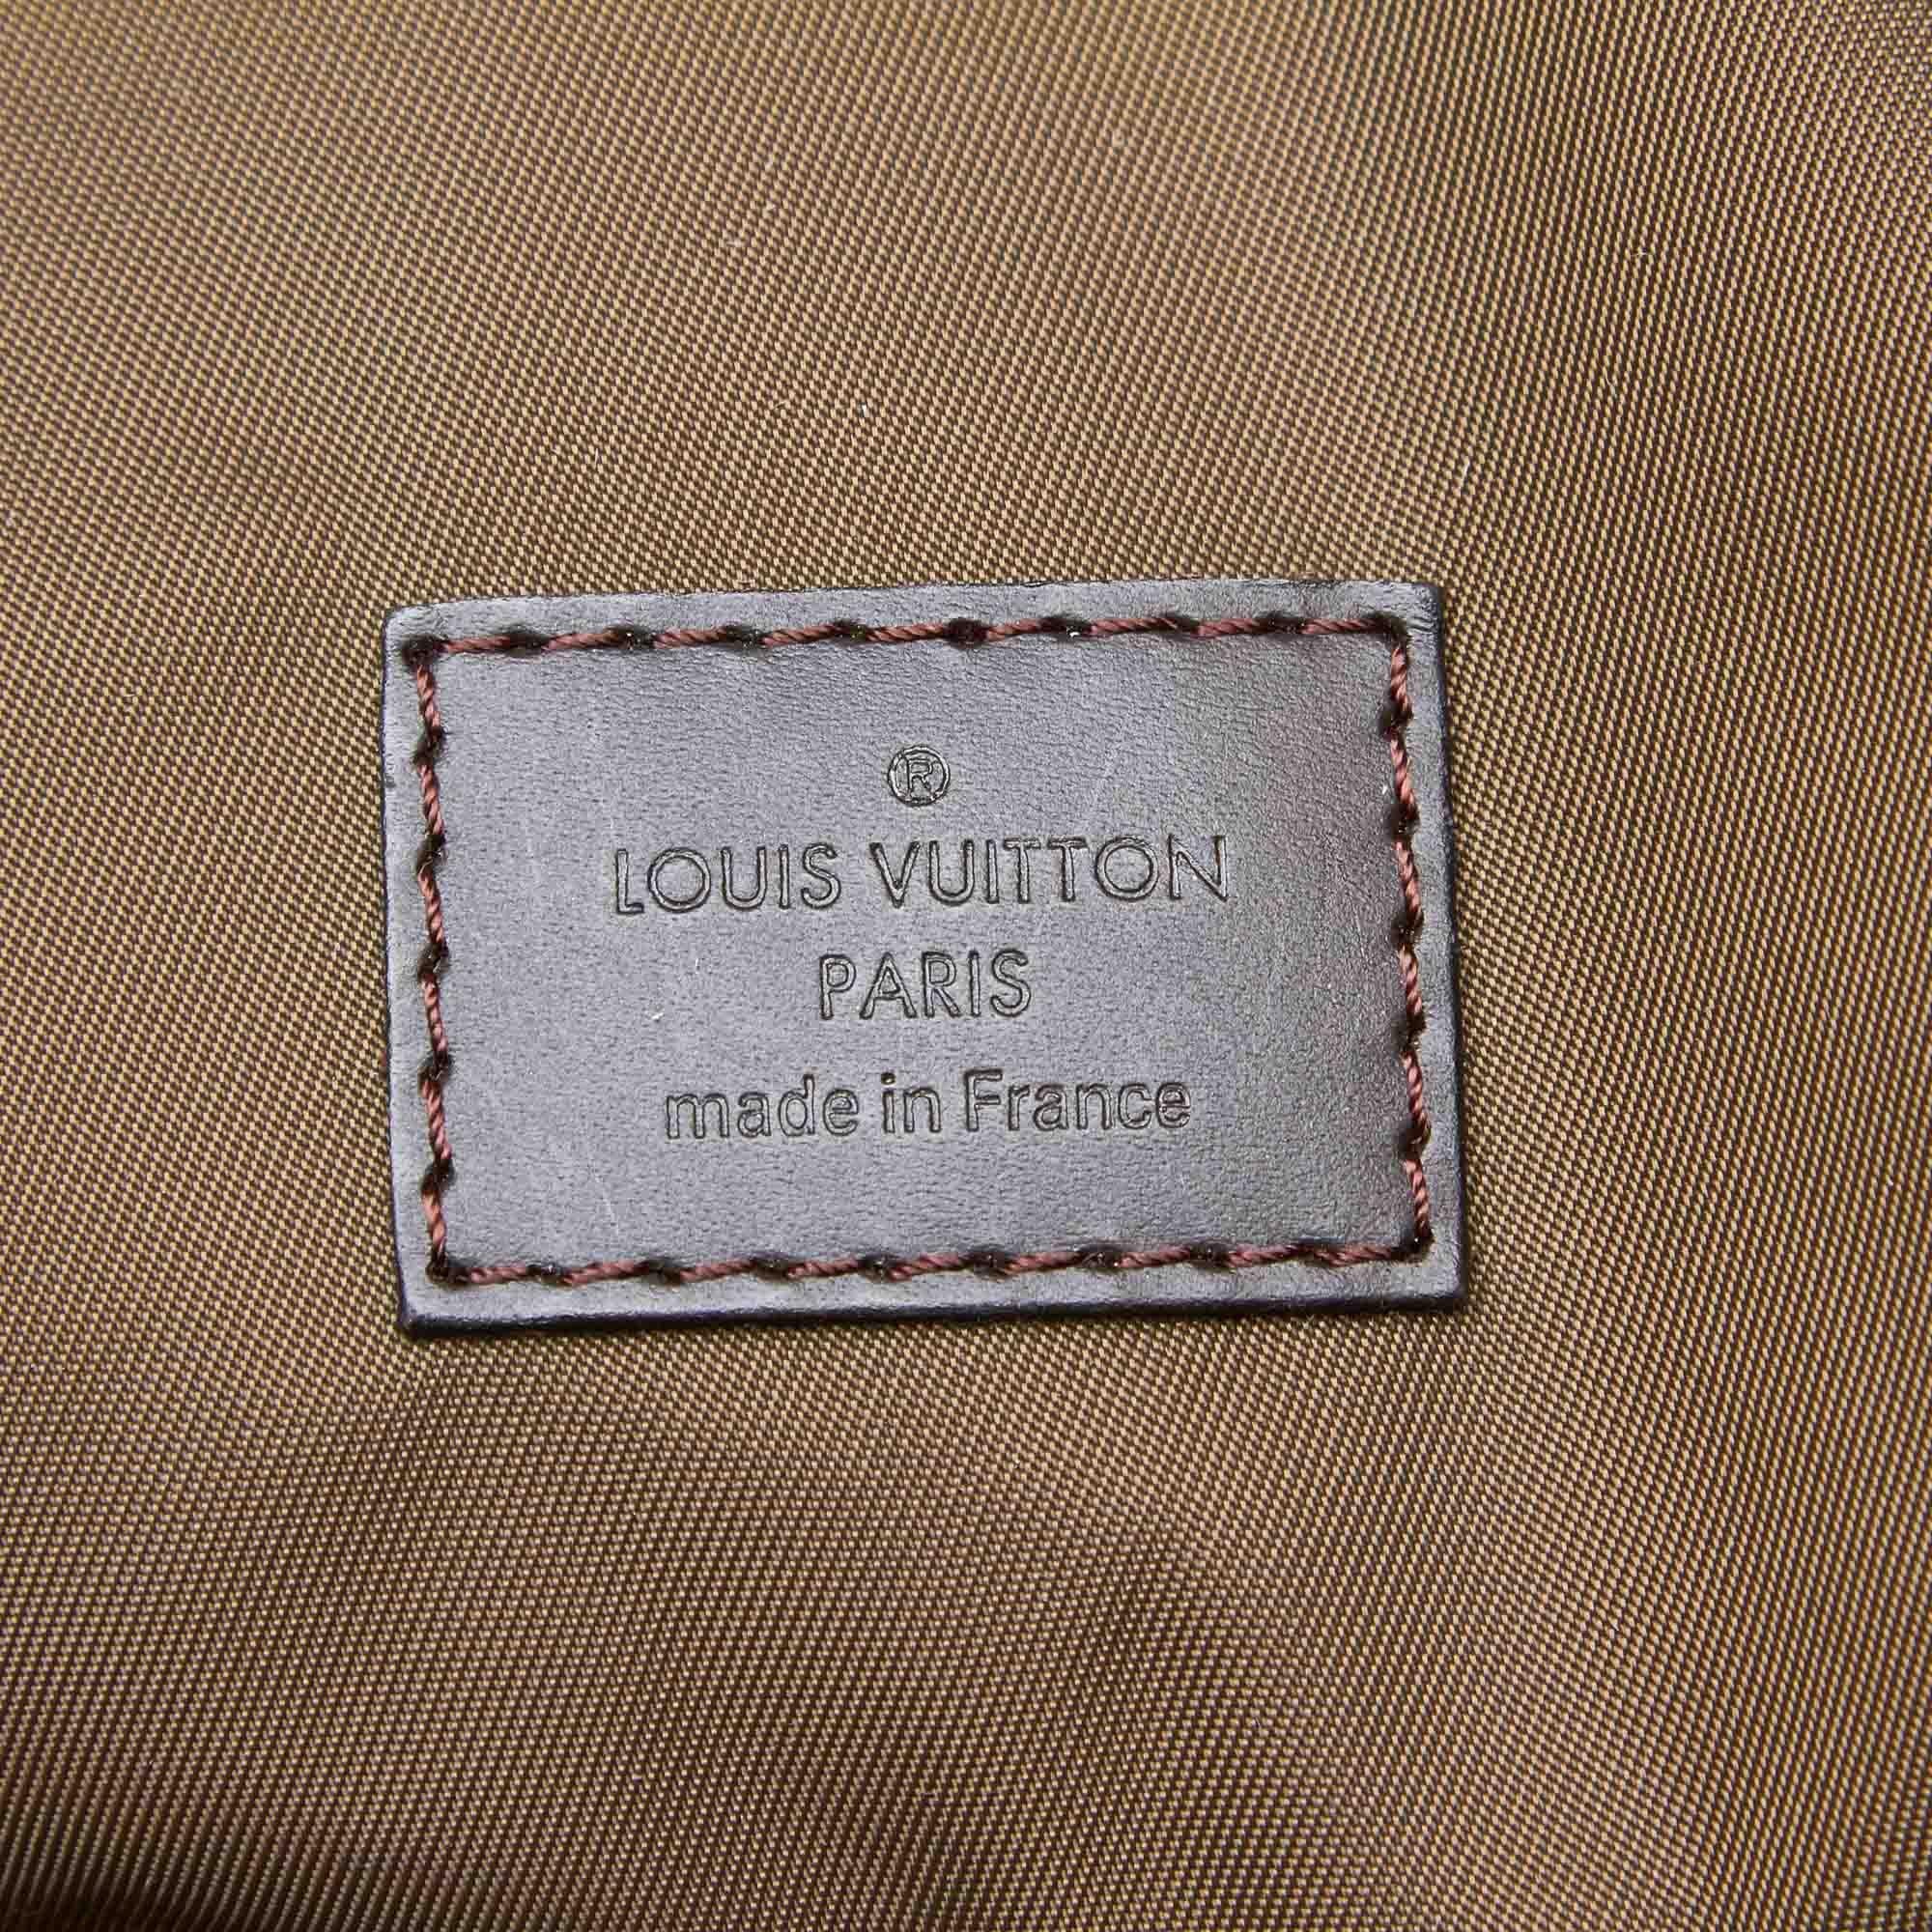 Vintage Authentic Louis Vuitton Geant Albatross Duffel Bag w Padlock Key LARGE  1